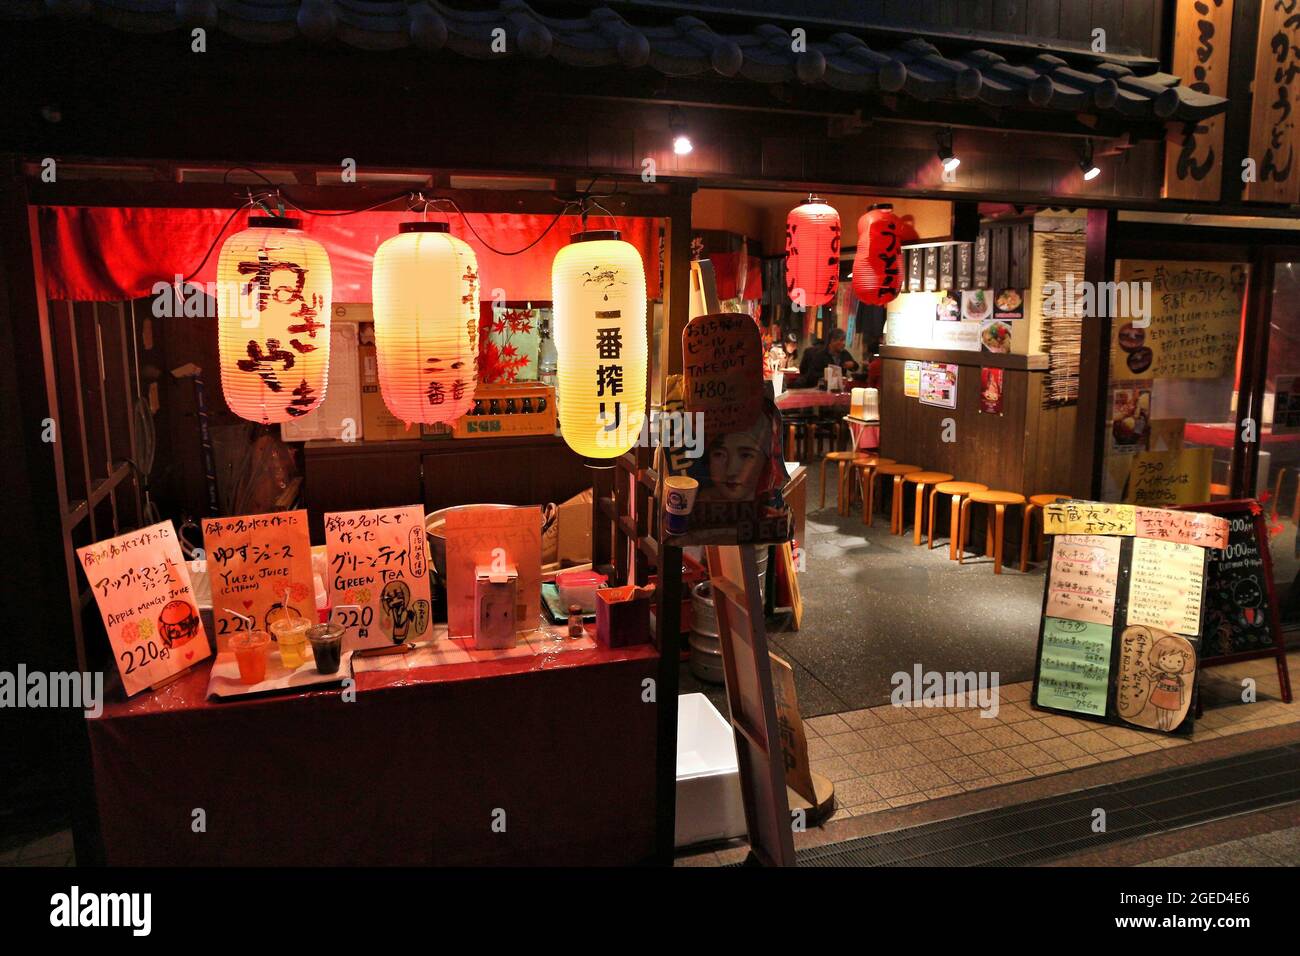 KYOTO, JAPAN - 27. NOVEMBER 2016: Traditionelles japanisches Restaurant in Kyoto, Japan. Japanische Restaurants sind in der Regel mit Chchin lan dekoriert Stockfoto